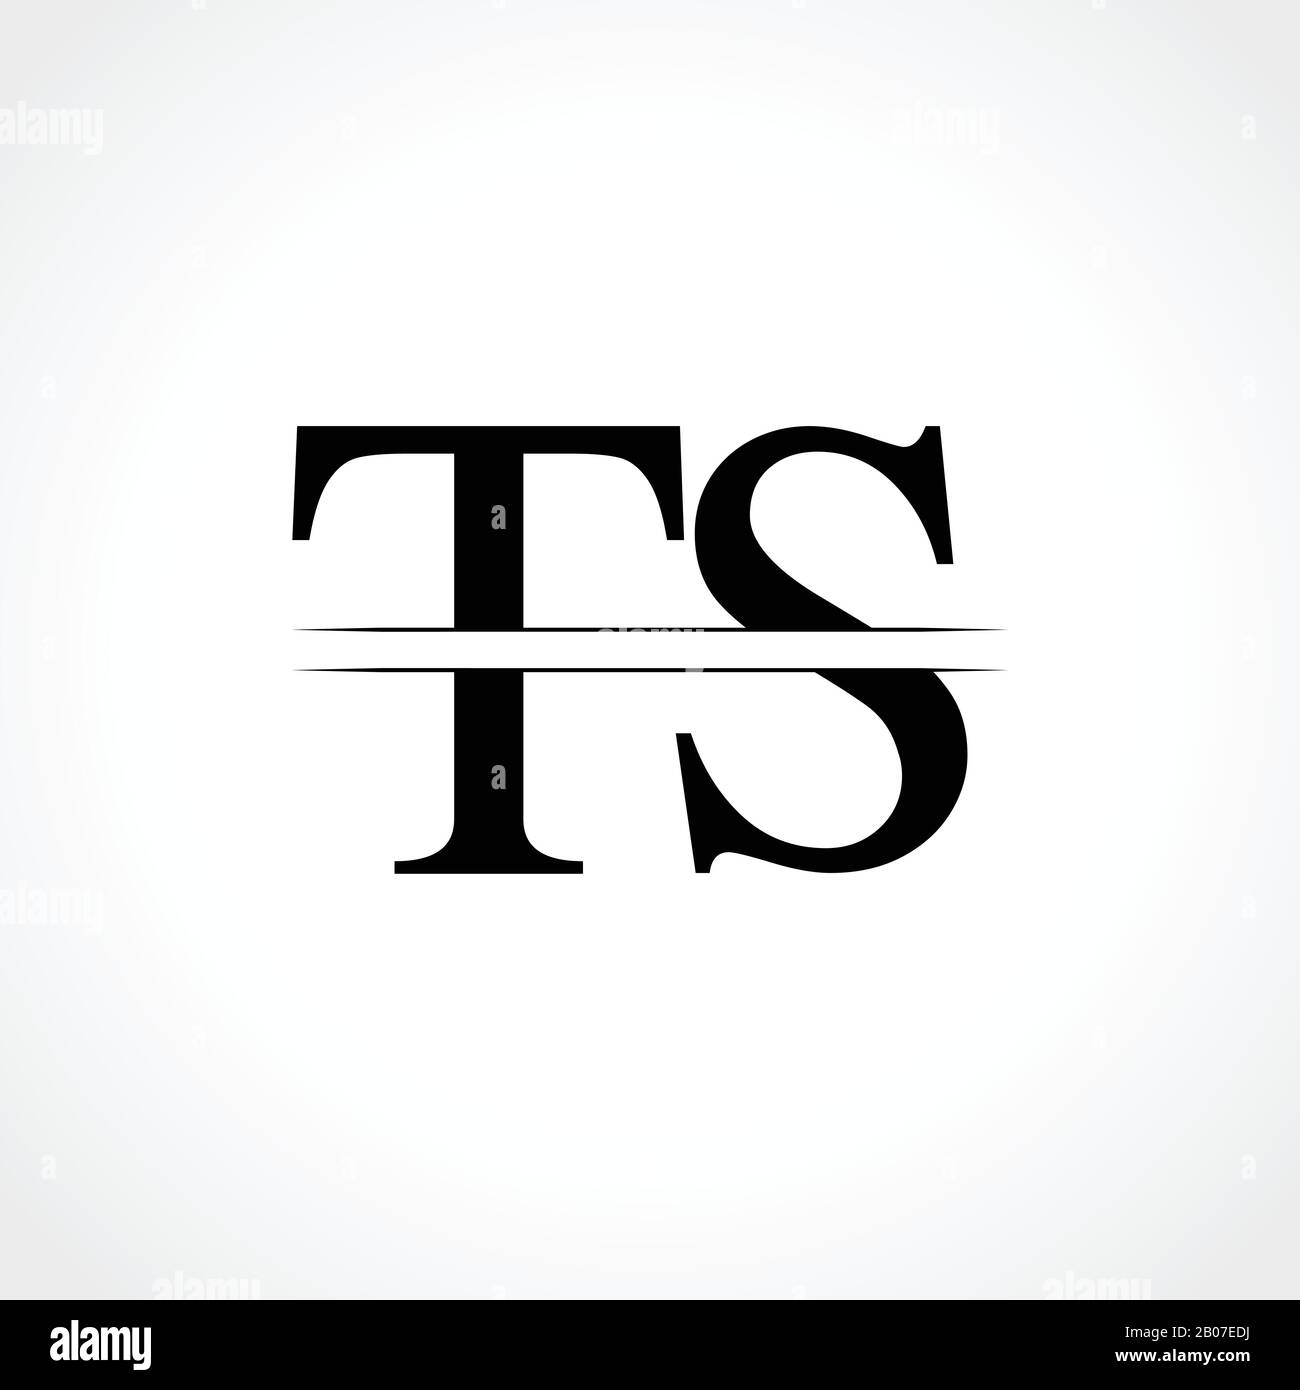 Ts Logolabel for a vine company by Tamas Kovacs on Dribbble